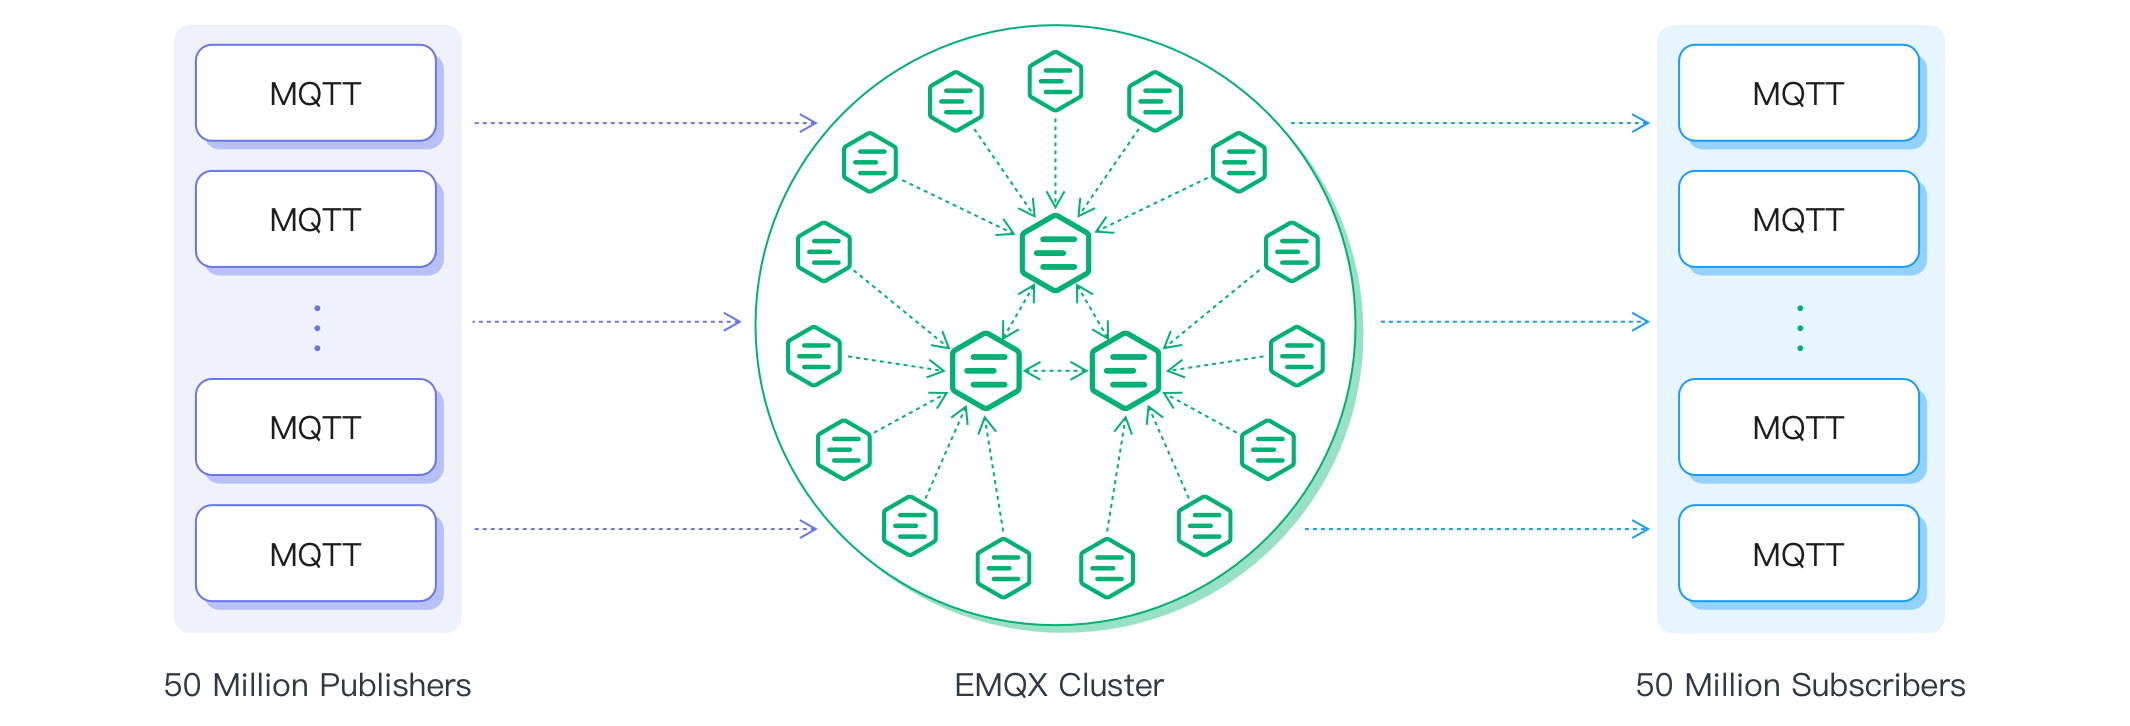 EMQX_cluster